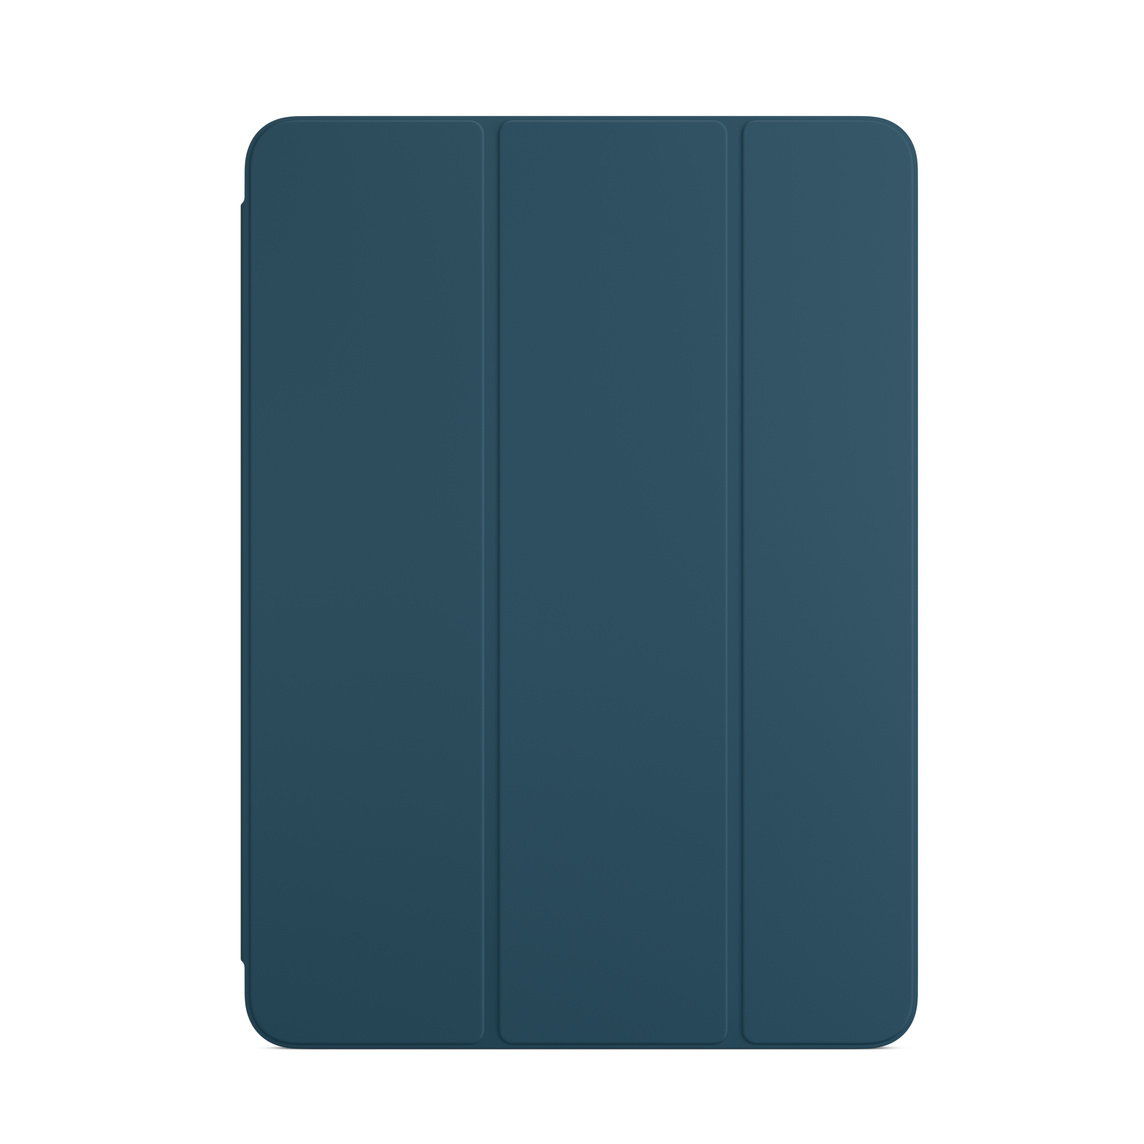 Smart Folio màu Xanh Hải Quân cho iPad Air.